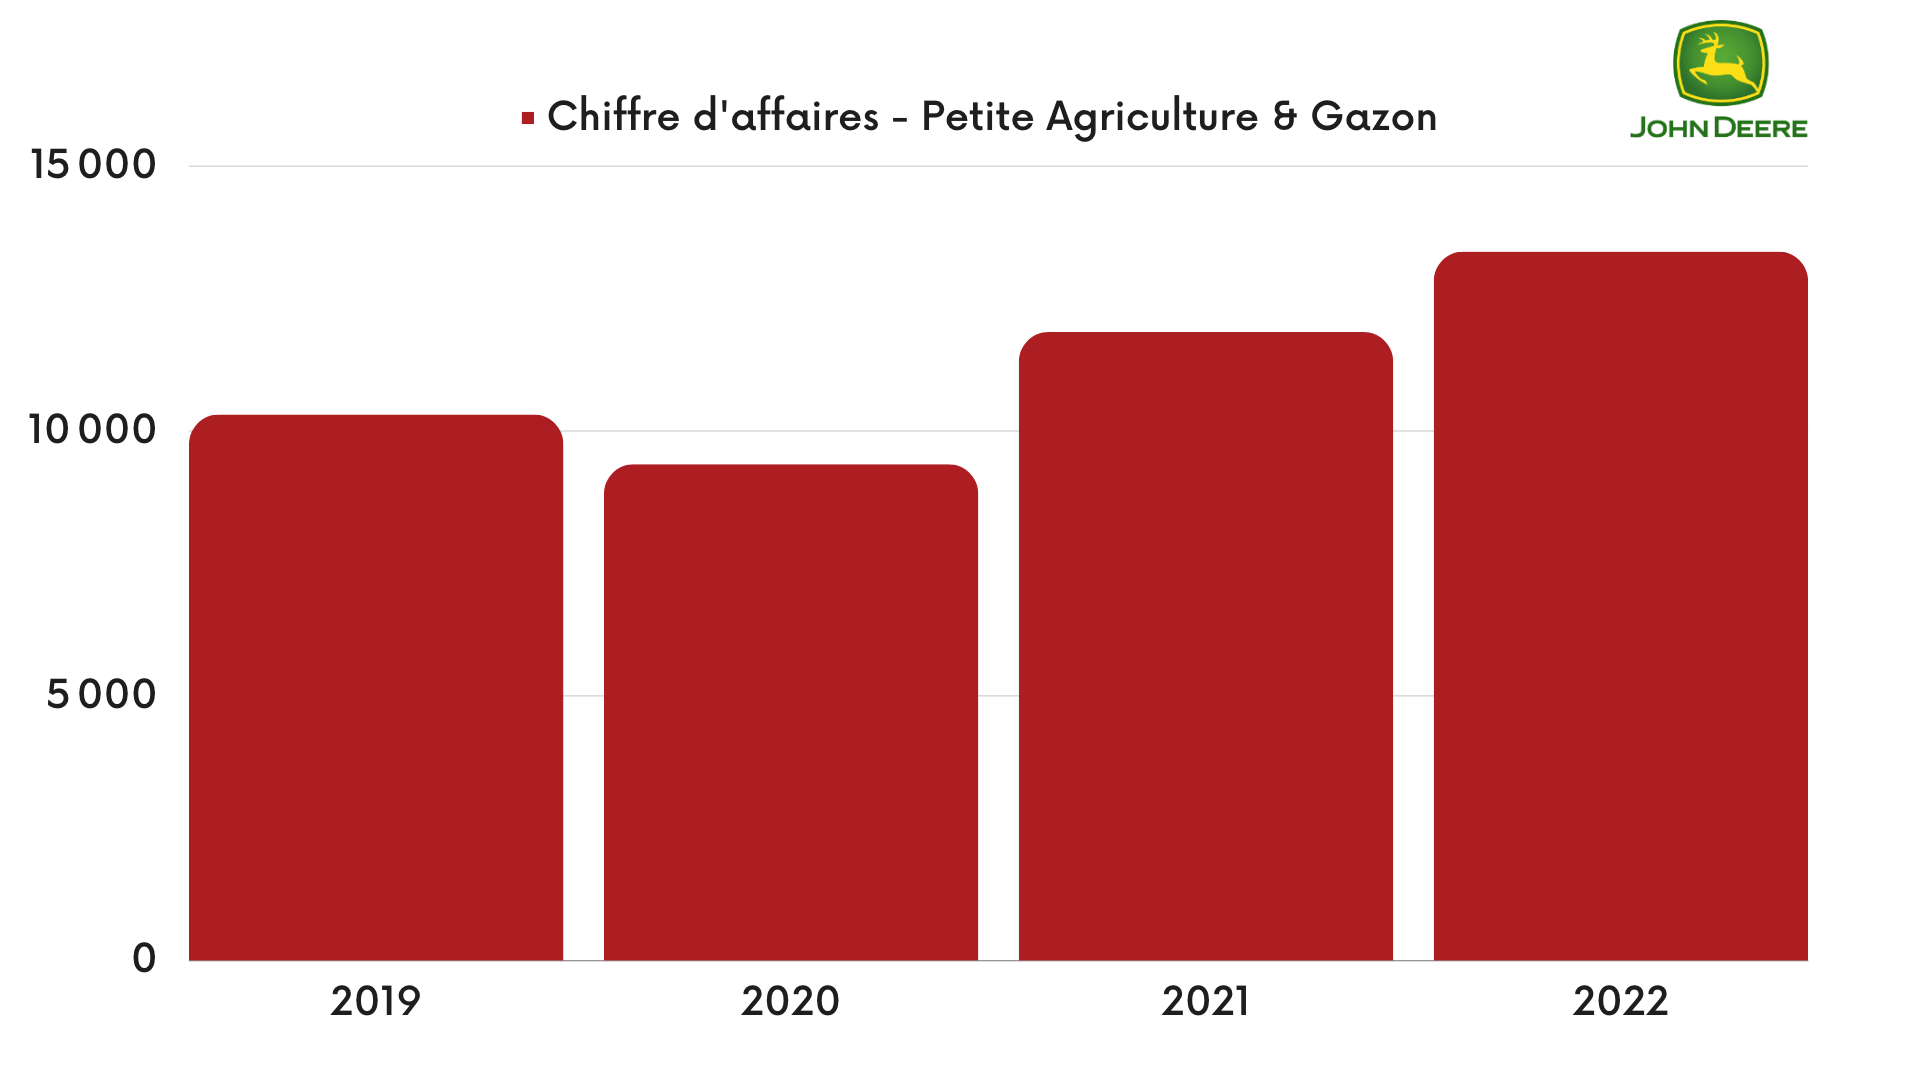 John Deere - Chiffre d'affaires de la branche Petite agriculture & Gazon